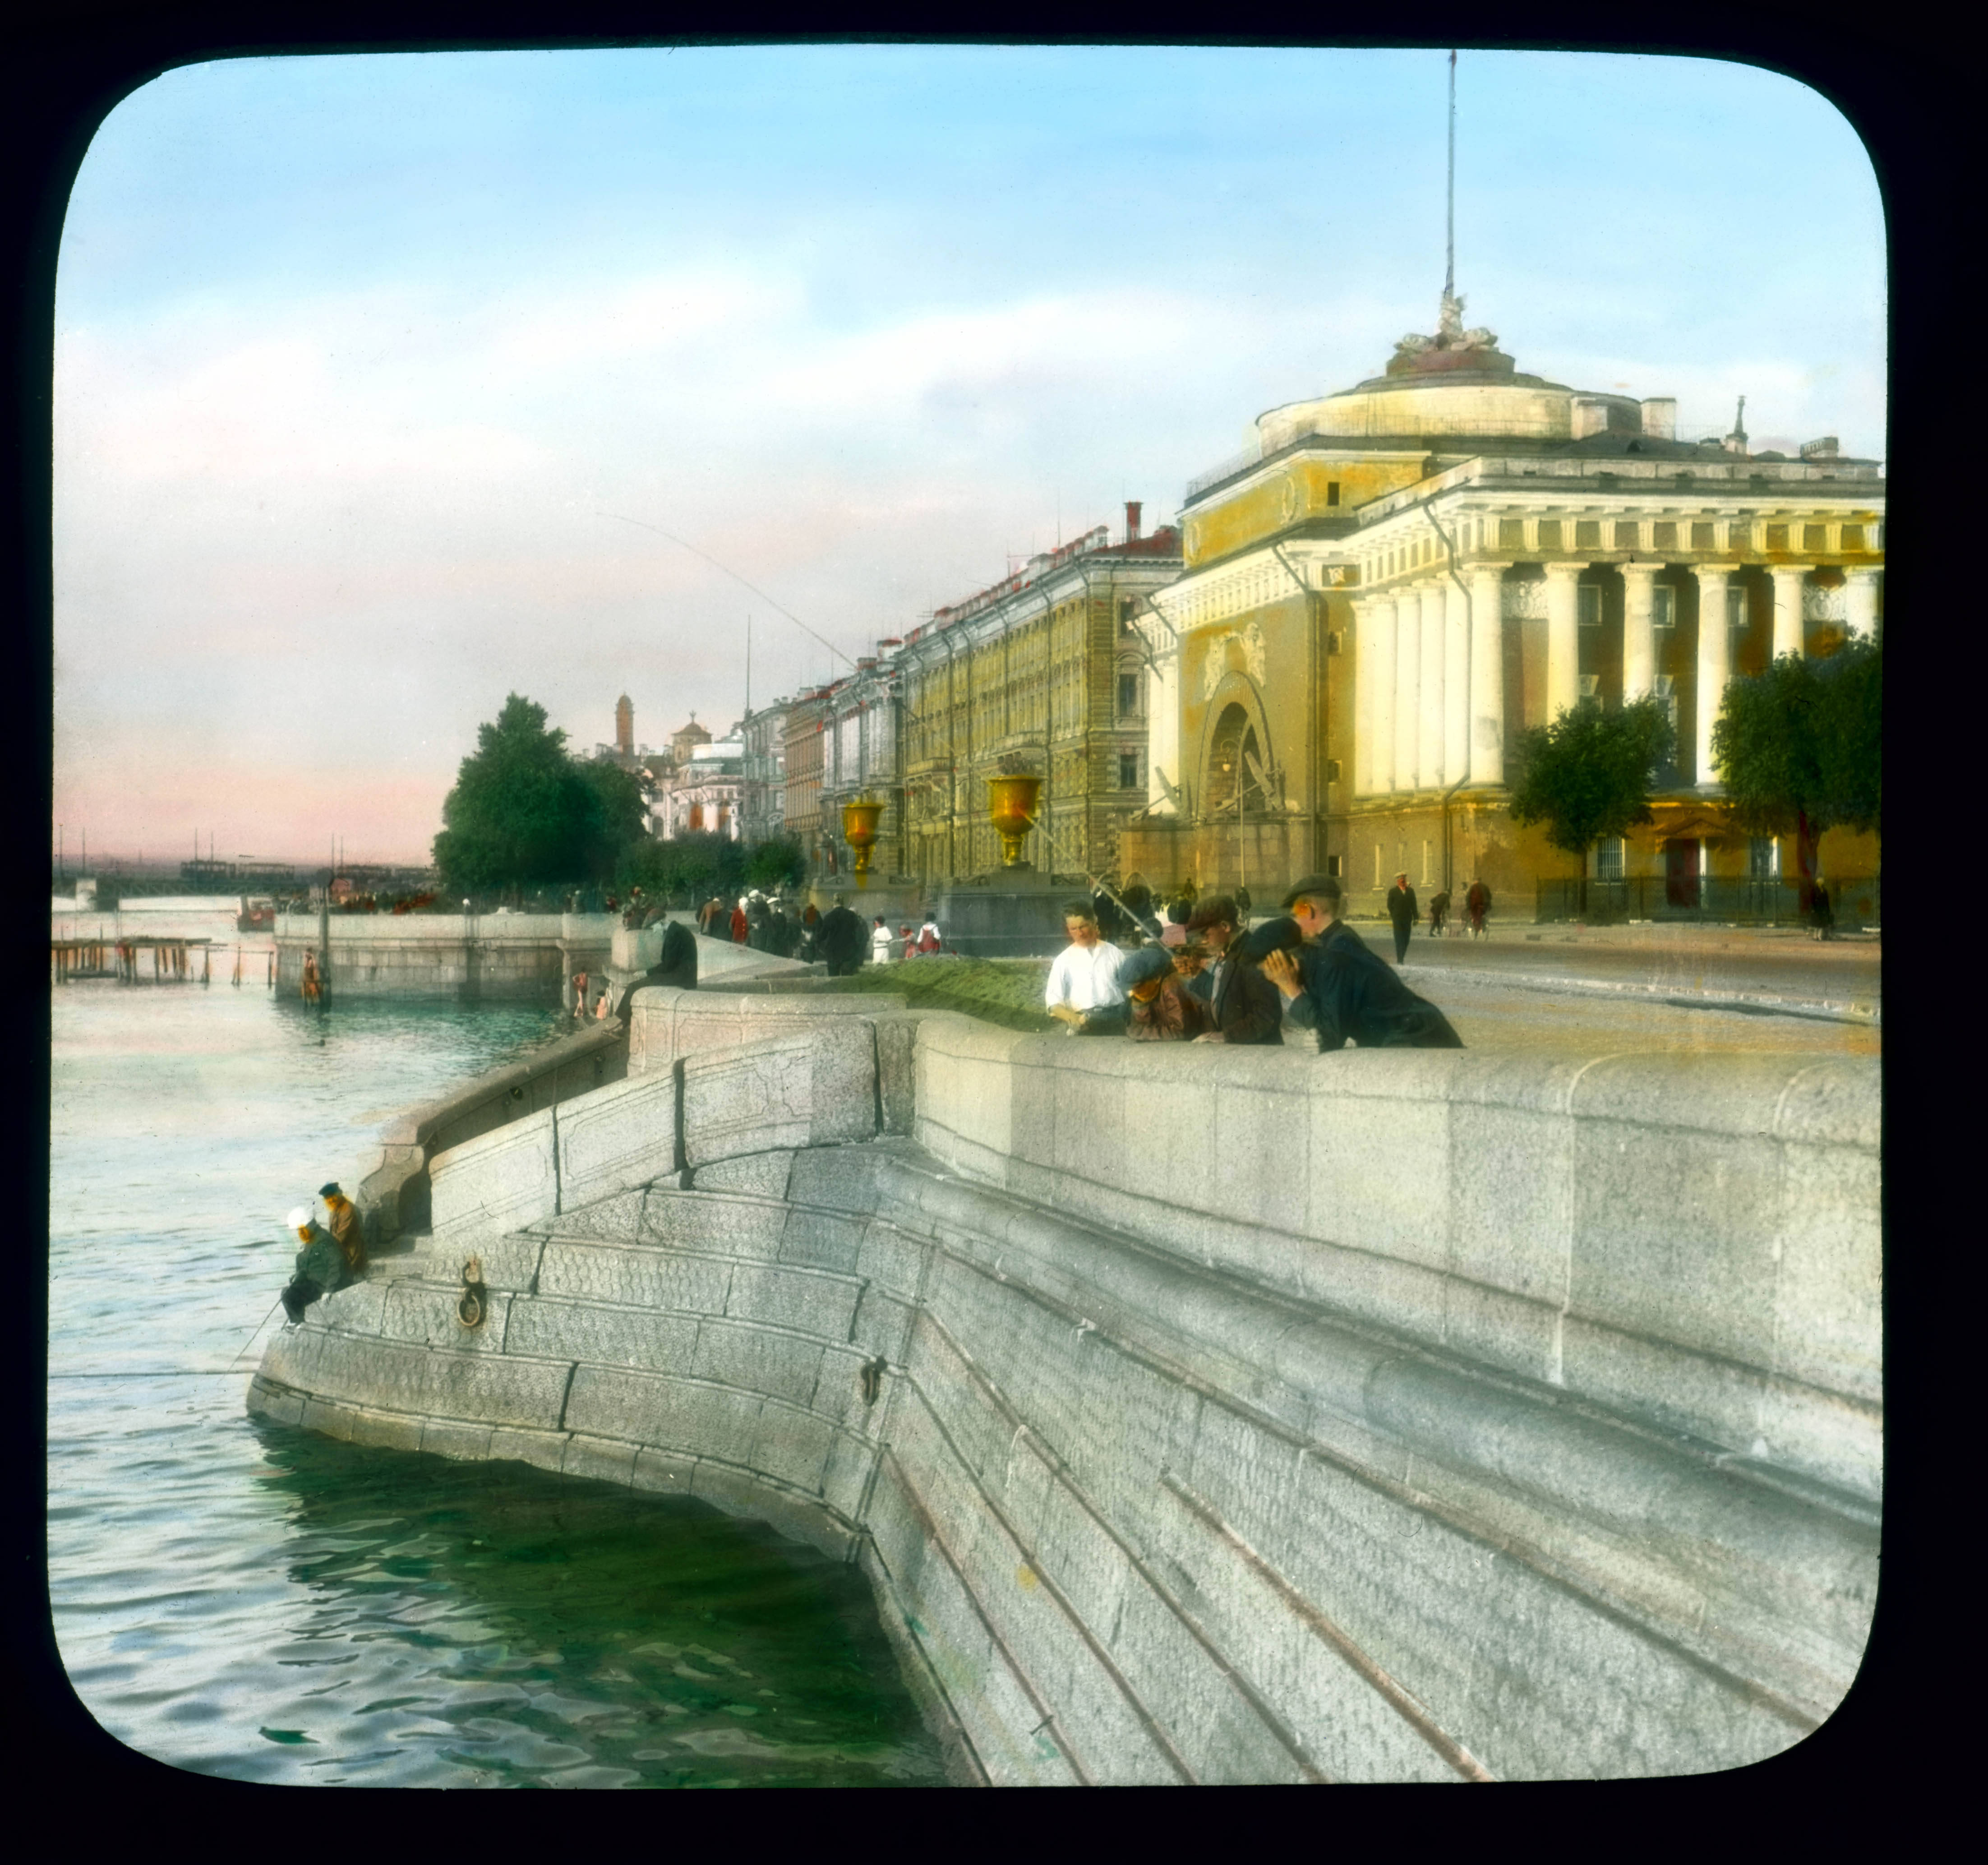 Saint Petersburg Neva Embankment, in front of the Admiralty Building